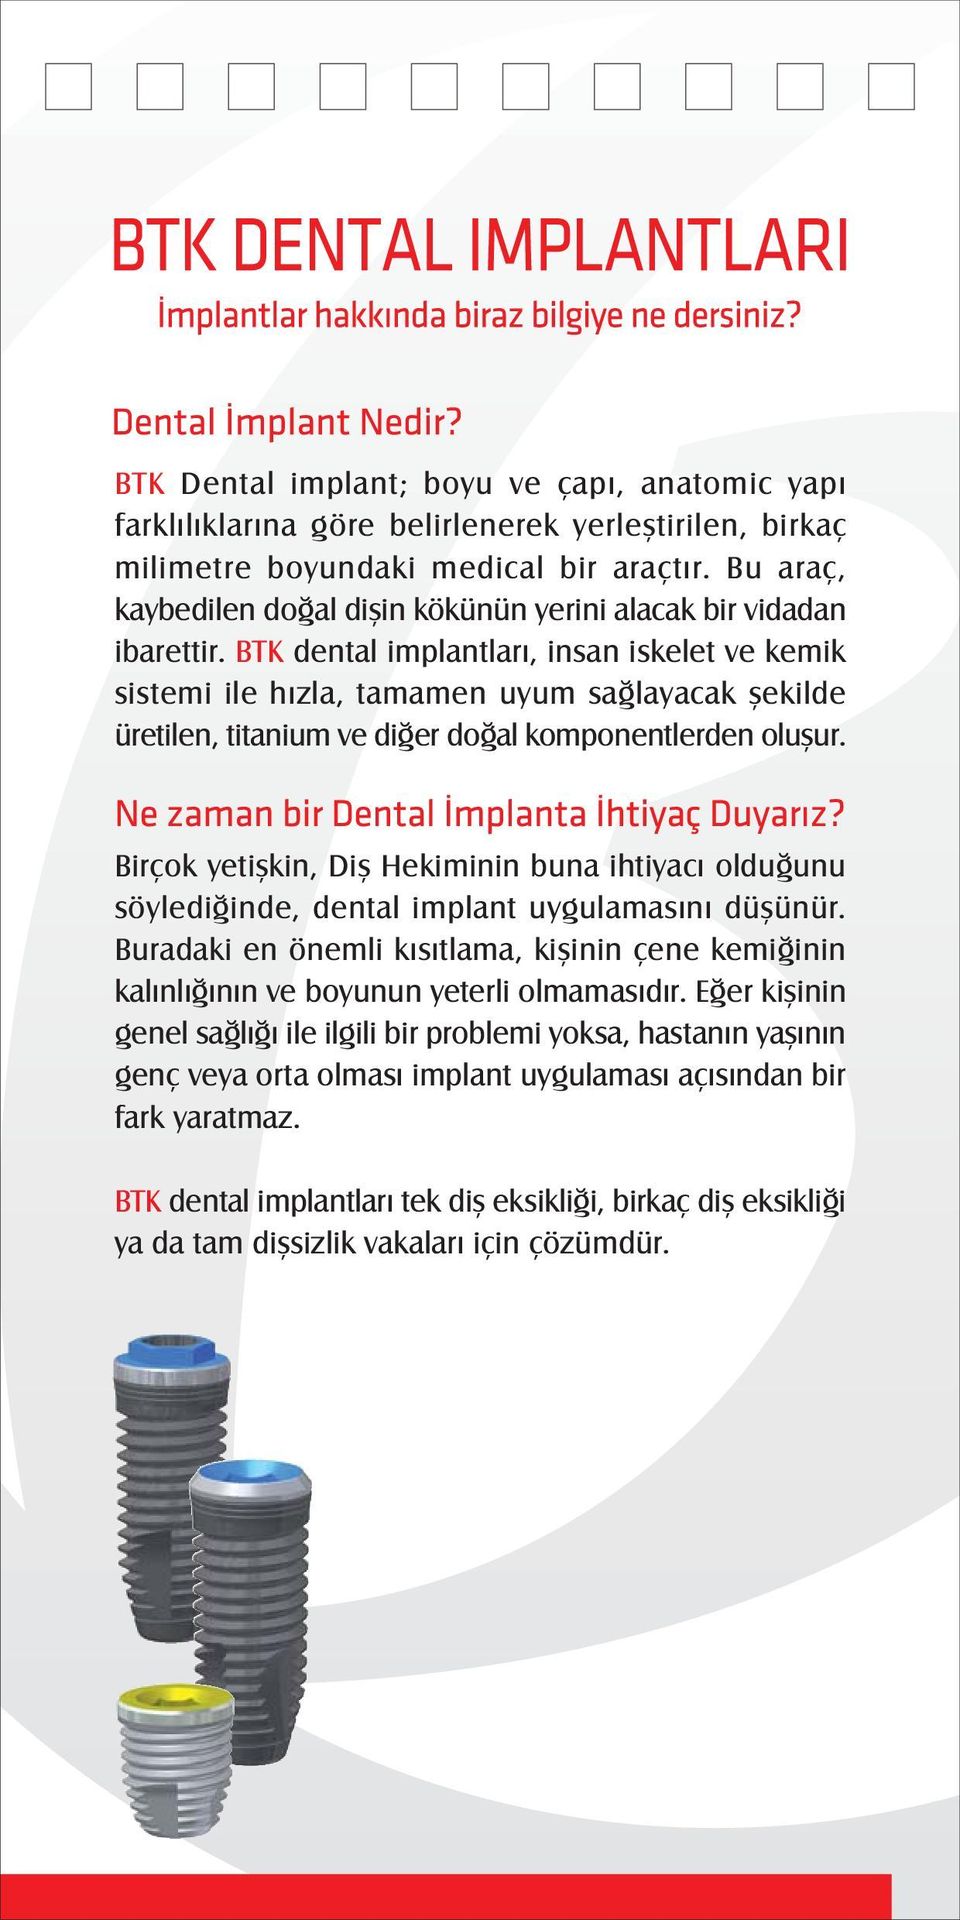 BTK dental implantlarý, insan iskelet ve kemik sistemi ile hýzla, tamamen uyum saðlayacak þekilde üretilen, titanium ve diðer doðal komponentlerden oluþur.